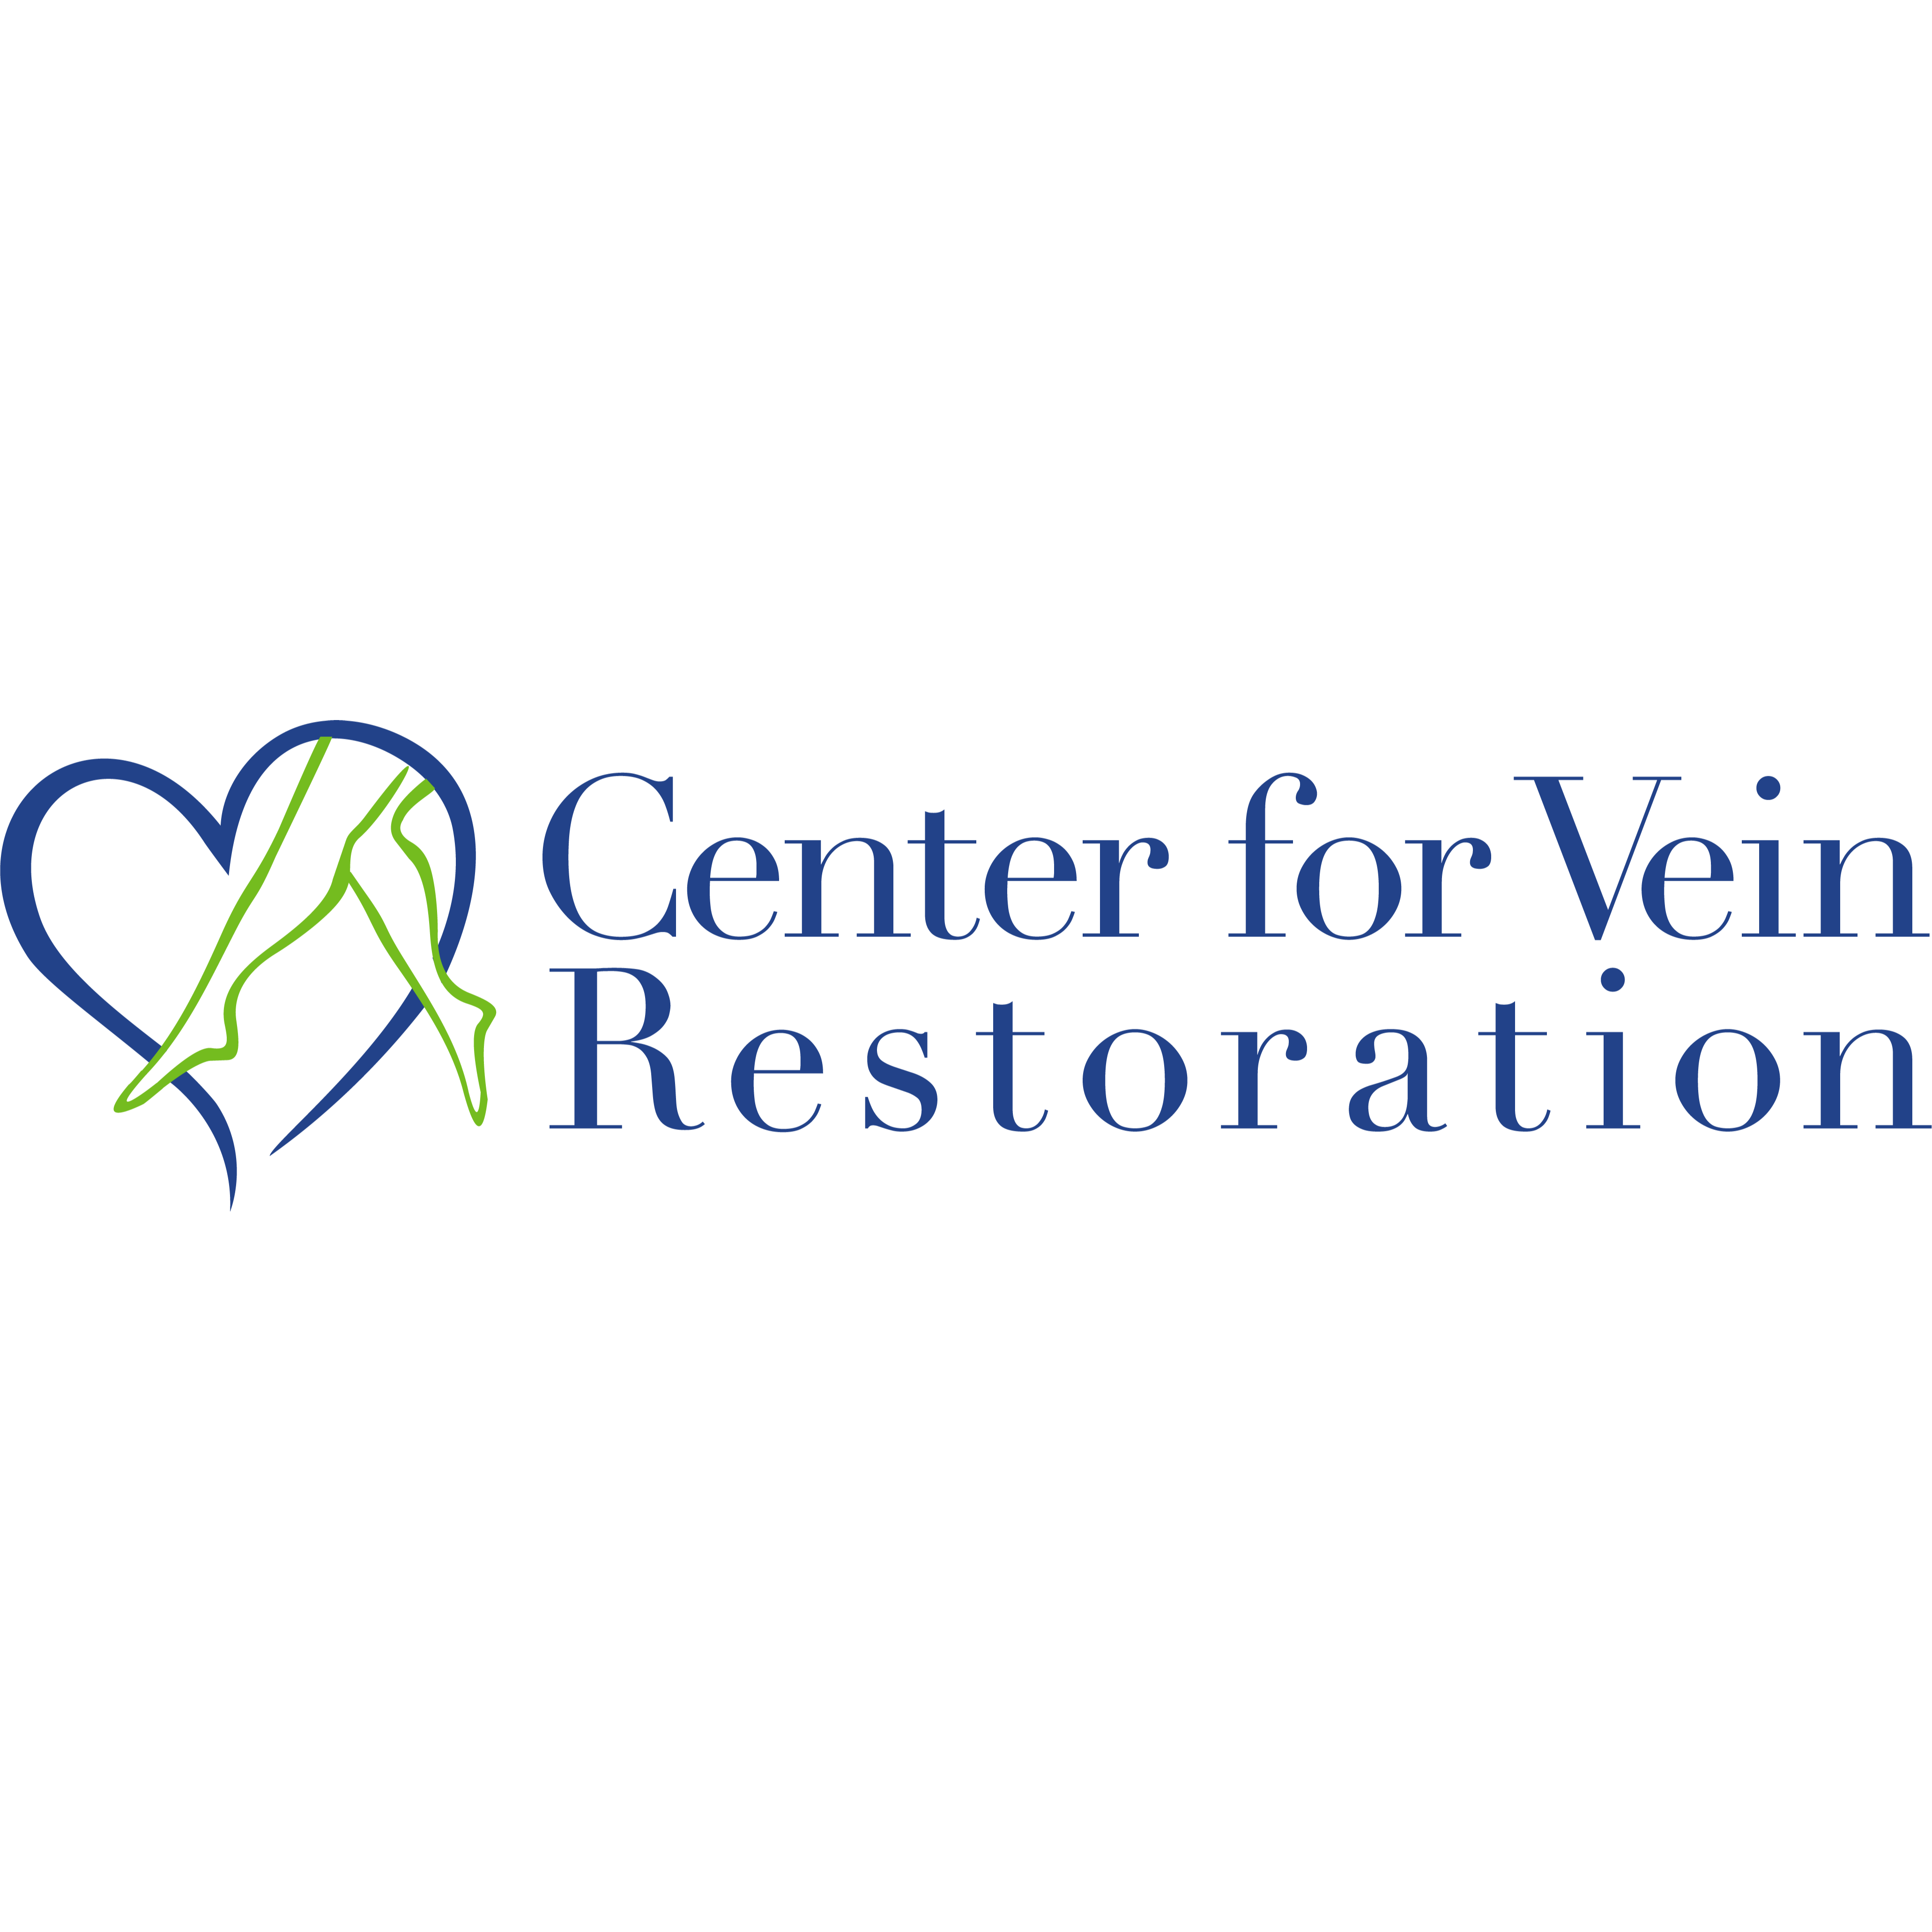 Center for Vein Restoration - Fairbanks, AK 99701 - (907)885-2647 | ShowMeLocal.com